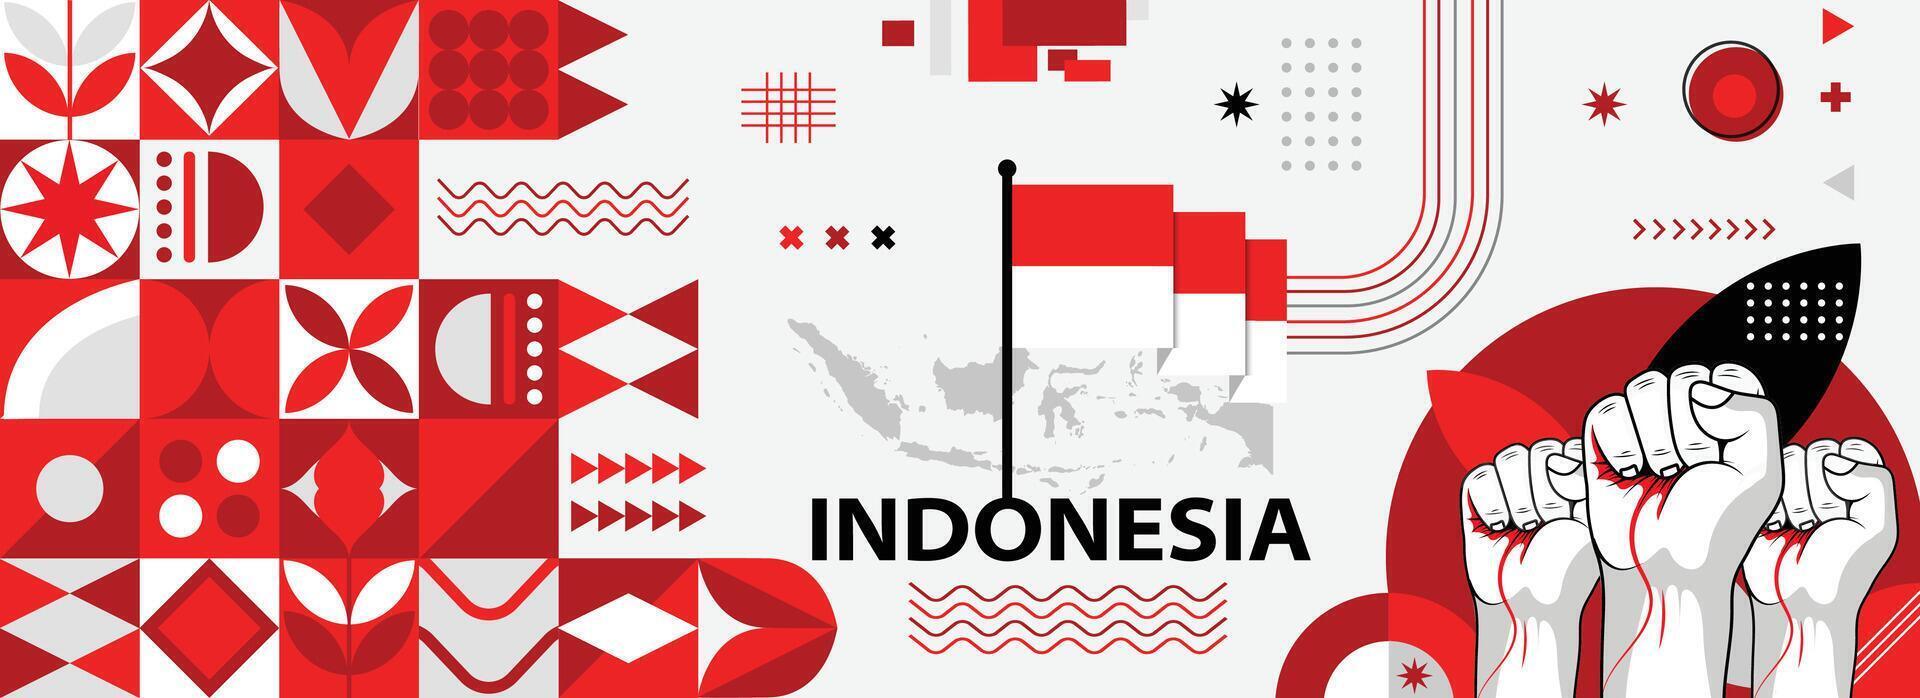 Indonesia nacional o independencia día bandera para país celebracion. bandera y mapa de Indonesia con elevado puños moderno retro diseño con tiporgafia resumen geométrico iconos vector ilustración